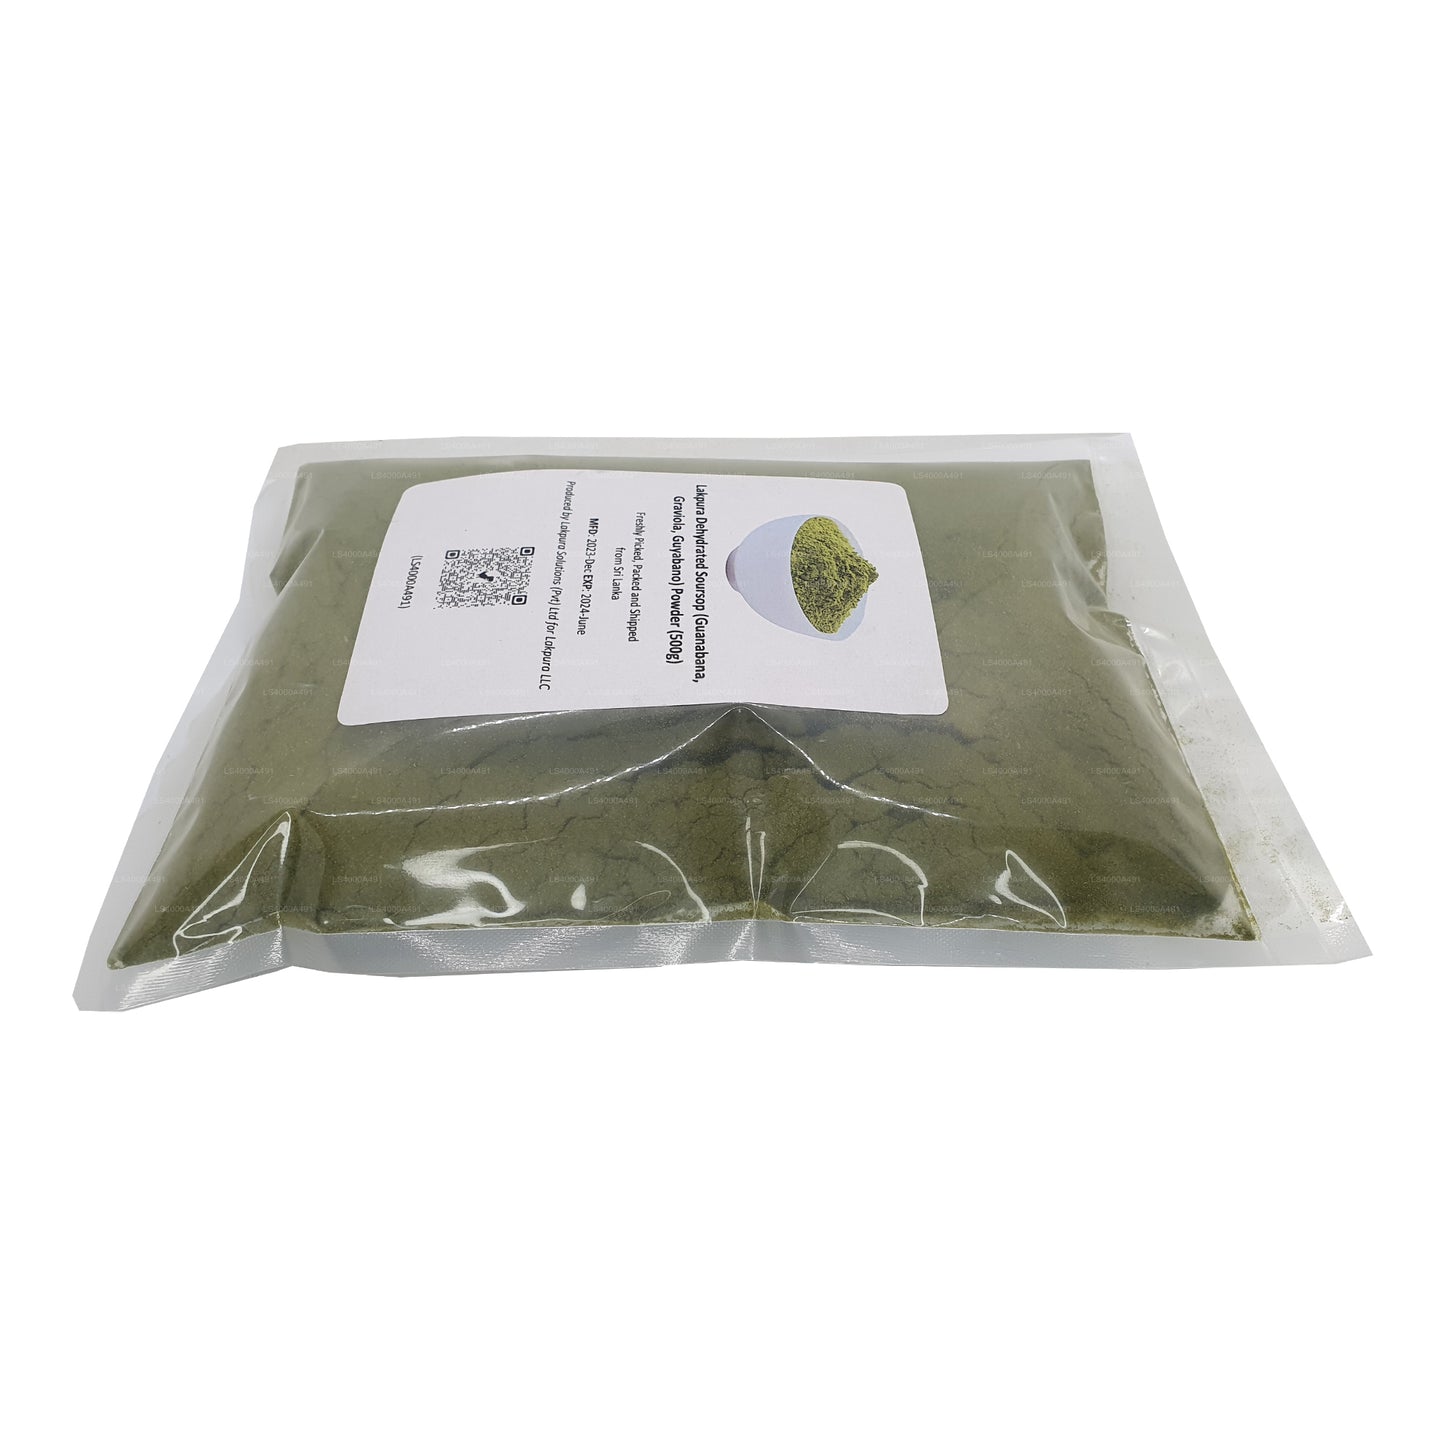 Lakpura Organic Soursop Graviola Pulver (100g)